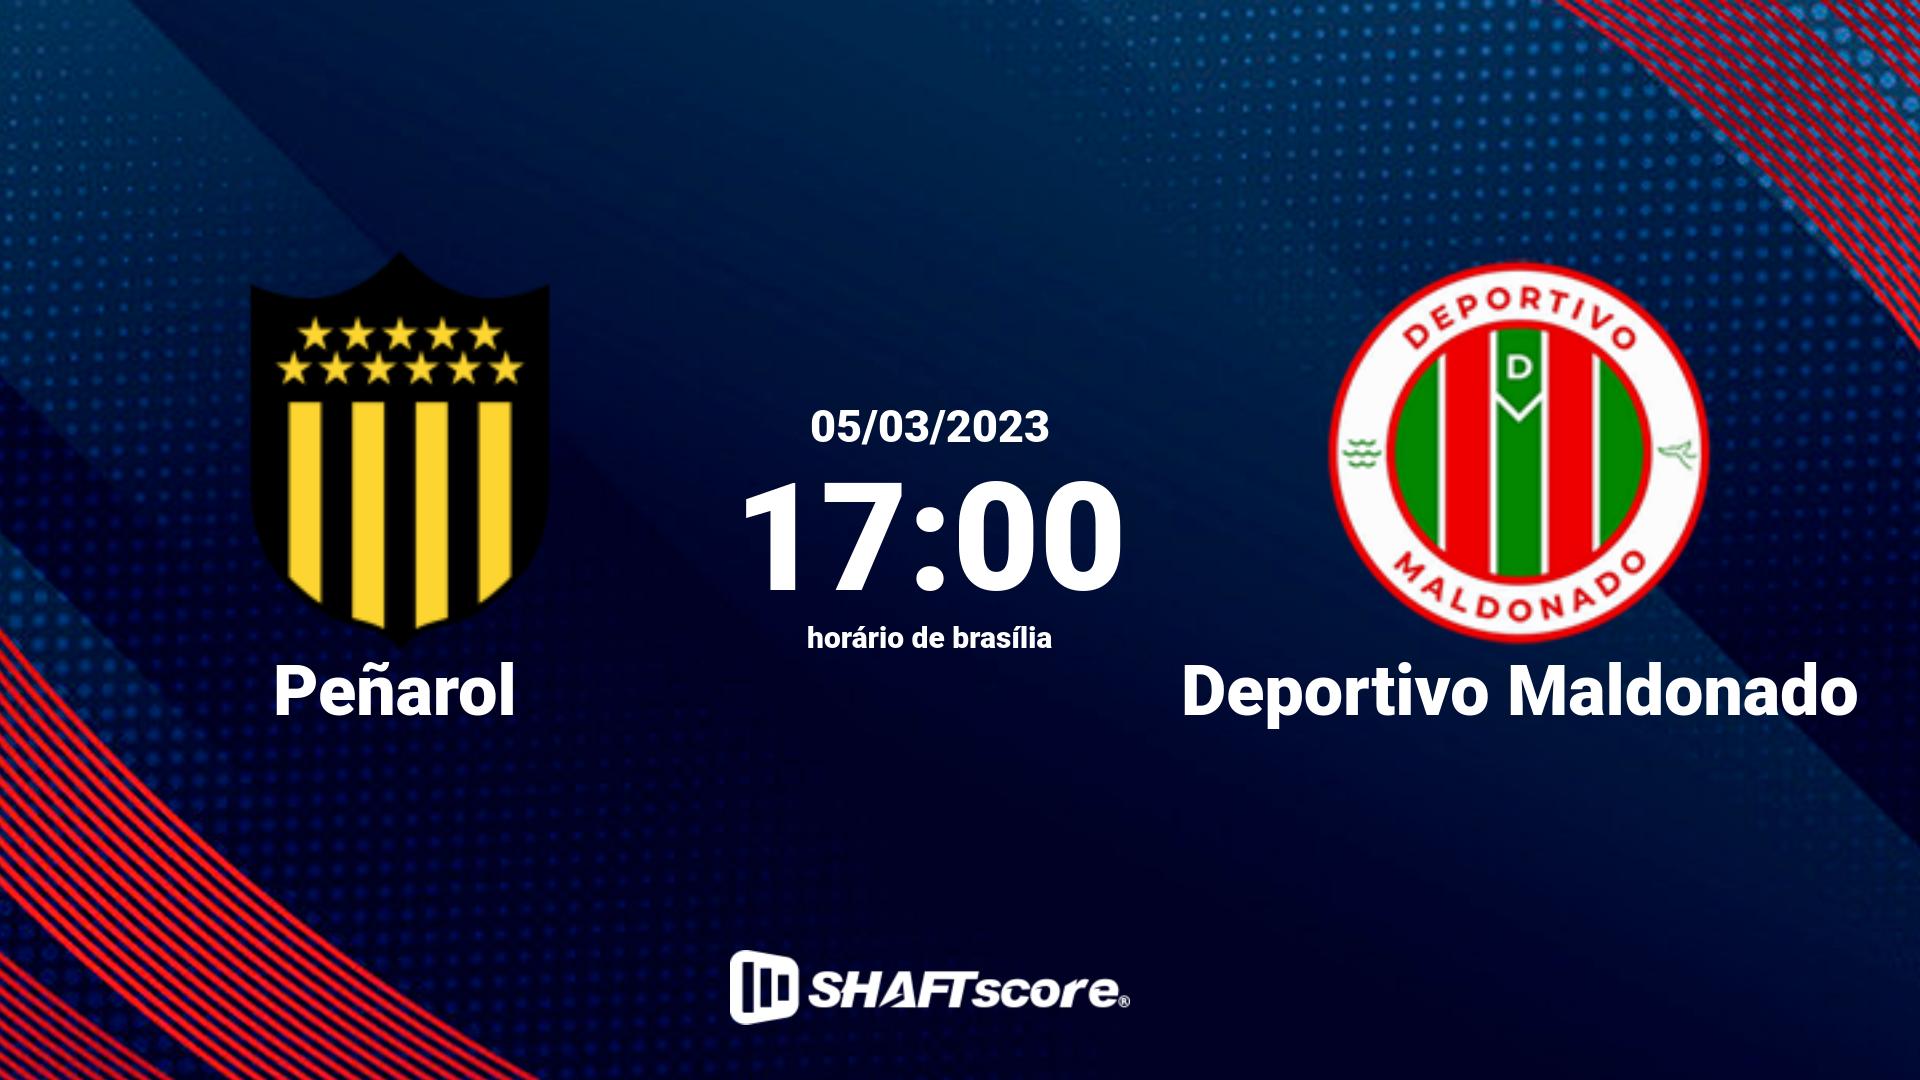 Estatísticas do jogo Peñarol vs Deportivo Maldonado 05.03 17:00